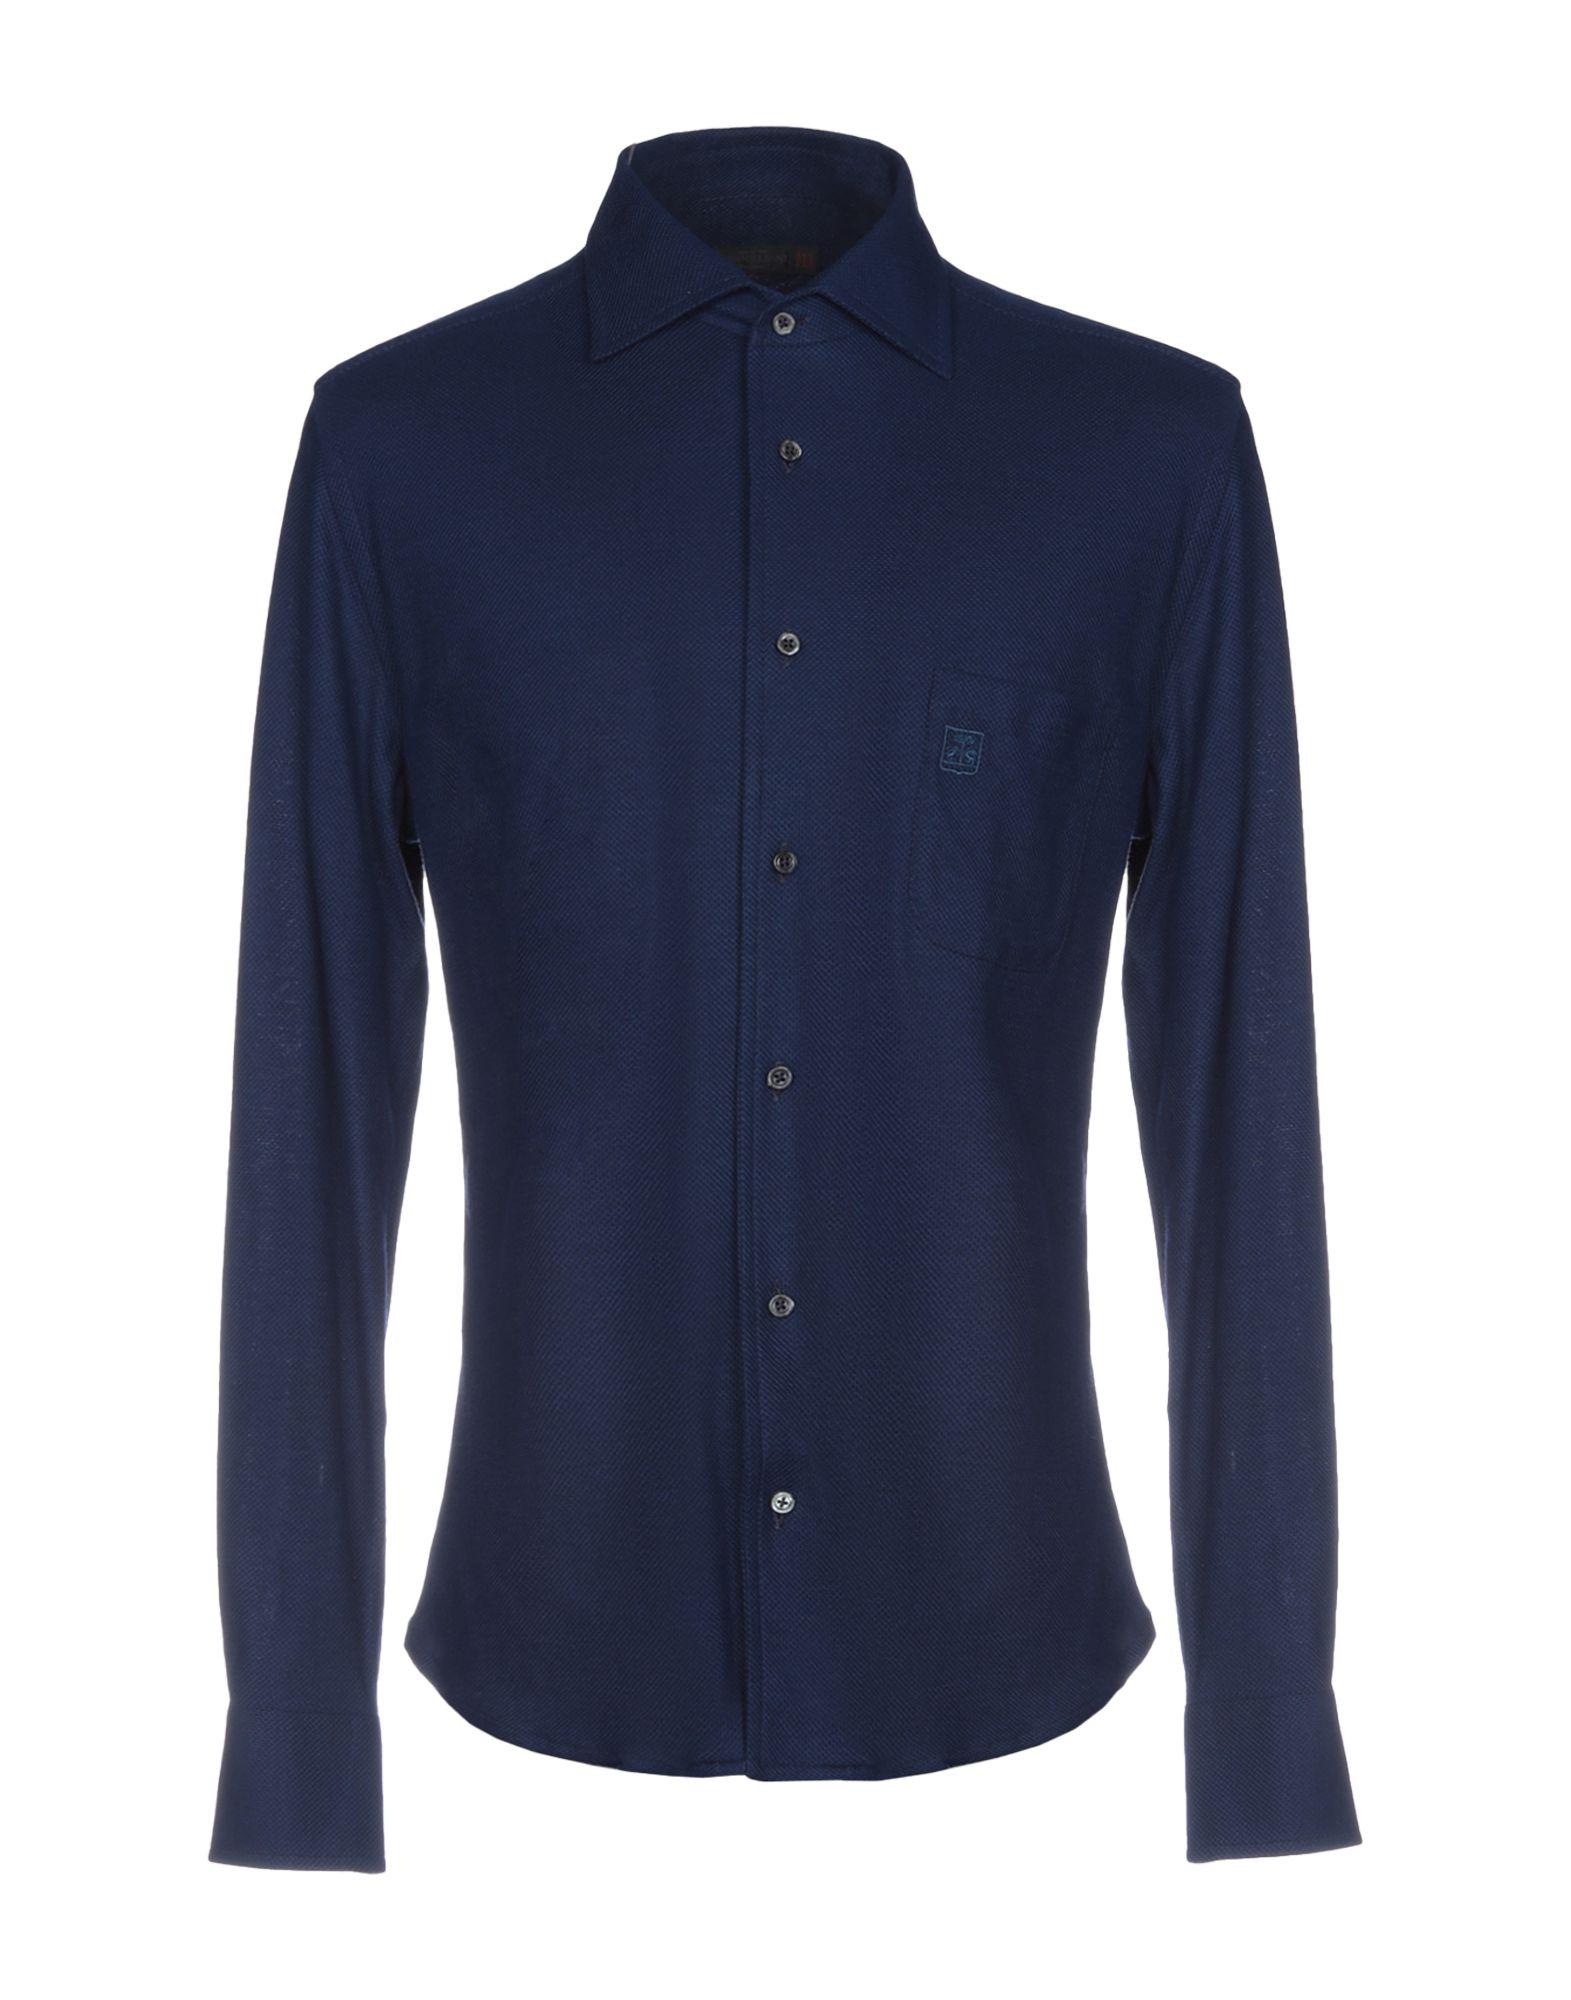 Corneliani Shirt in Blue for Men - Lyst